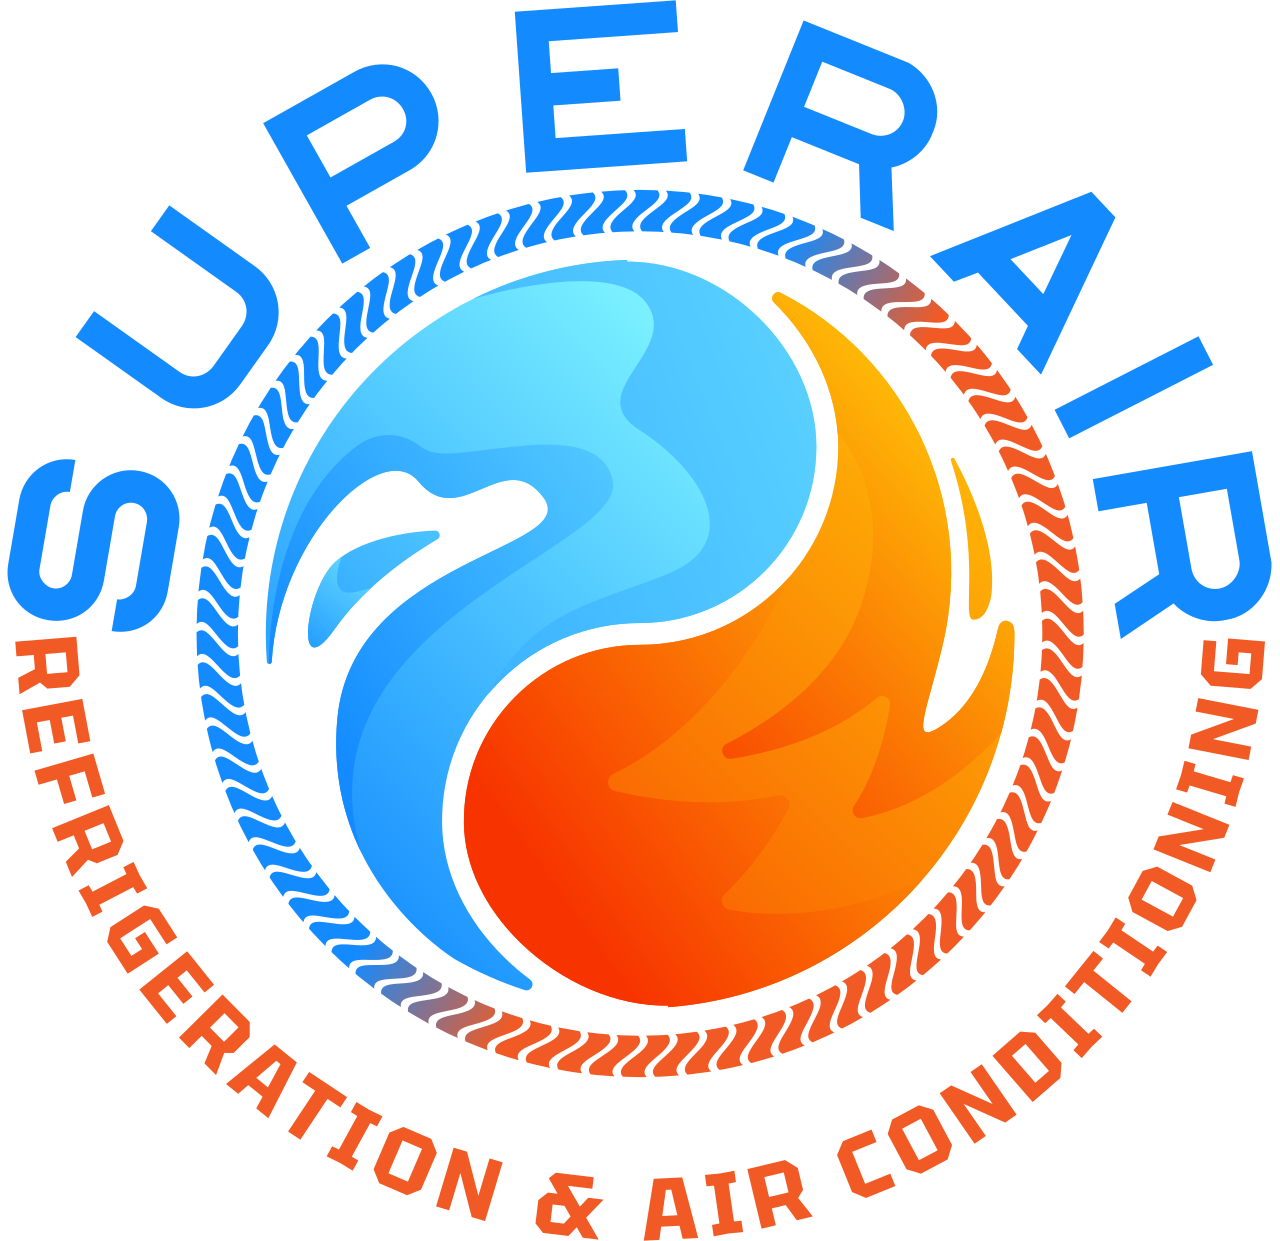 SUPERAIR's logo